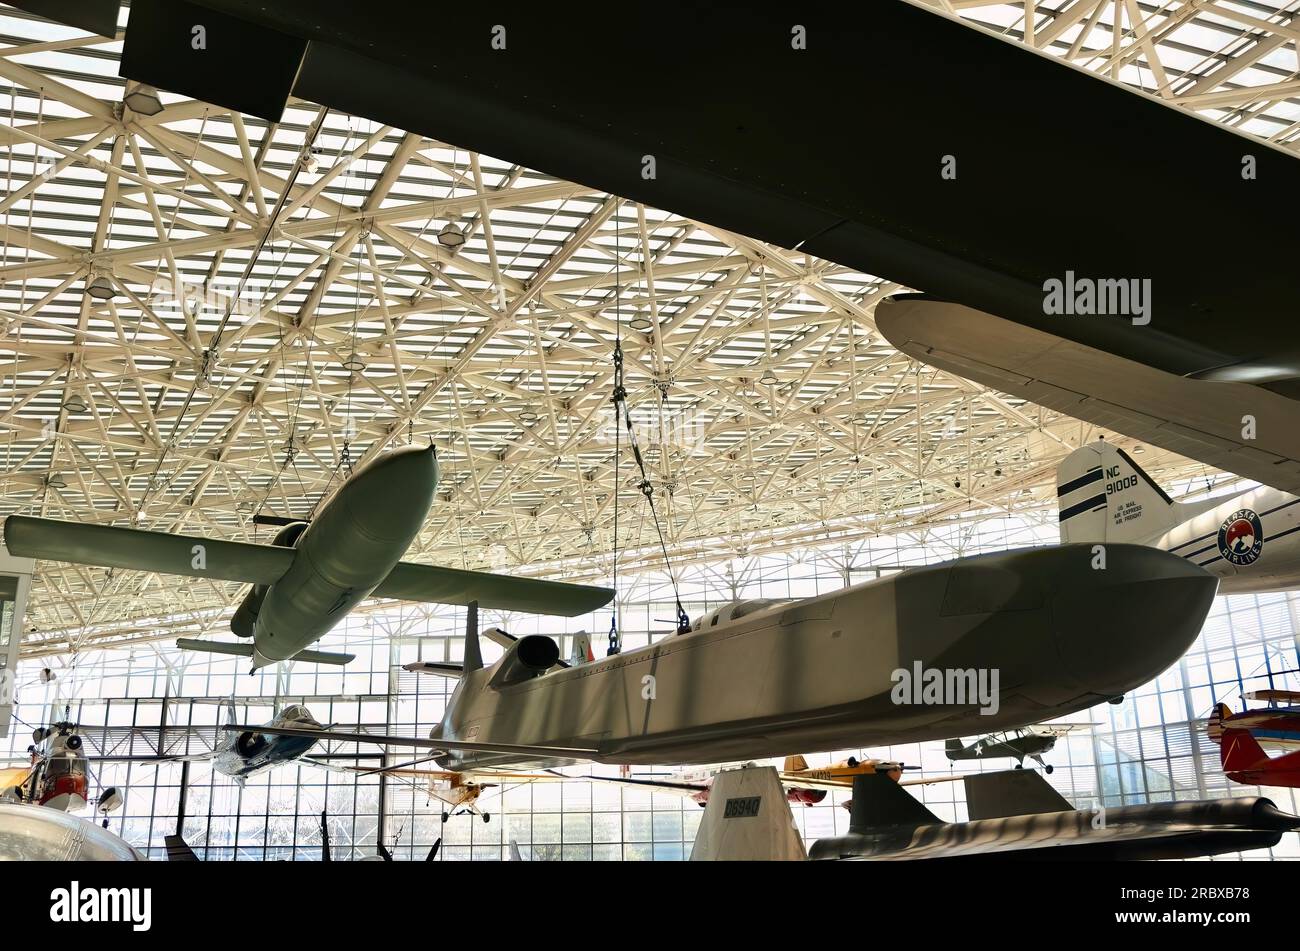 USAF AGM-86B-Unterschall-Flugkörper und V-1-Bombe in der Great Gallery das Museum of Flight Tukwila Seattle Washington State USA Stockfoto